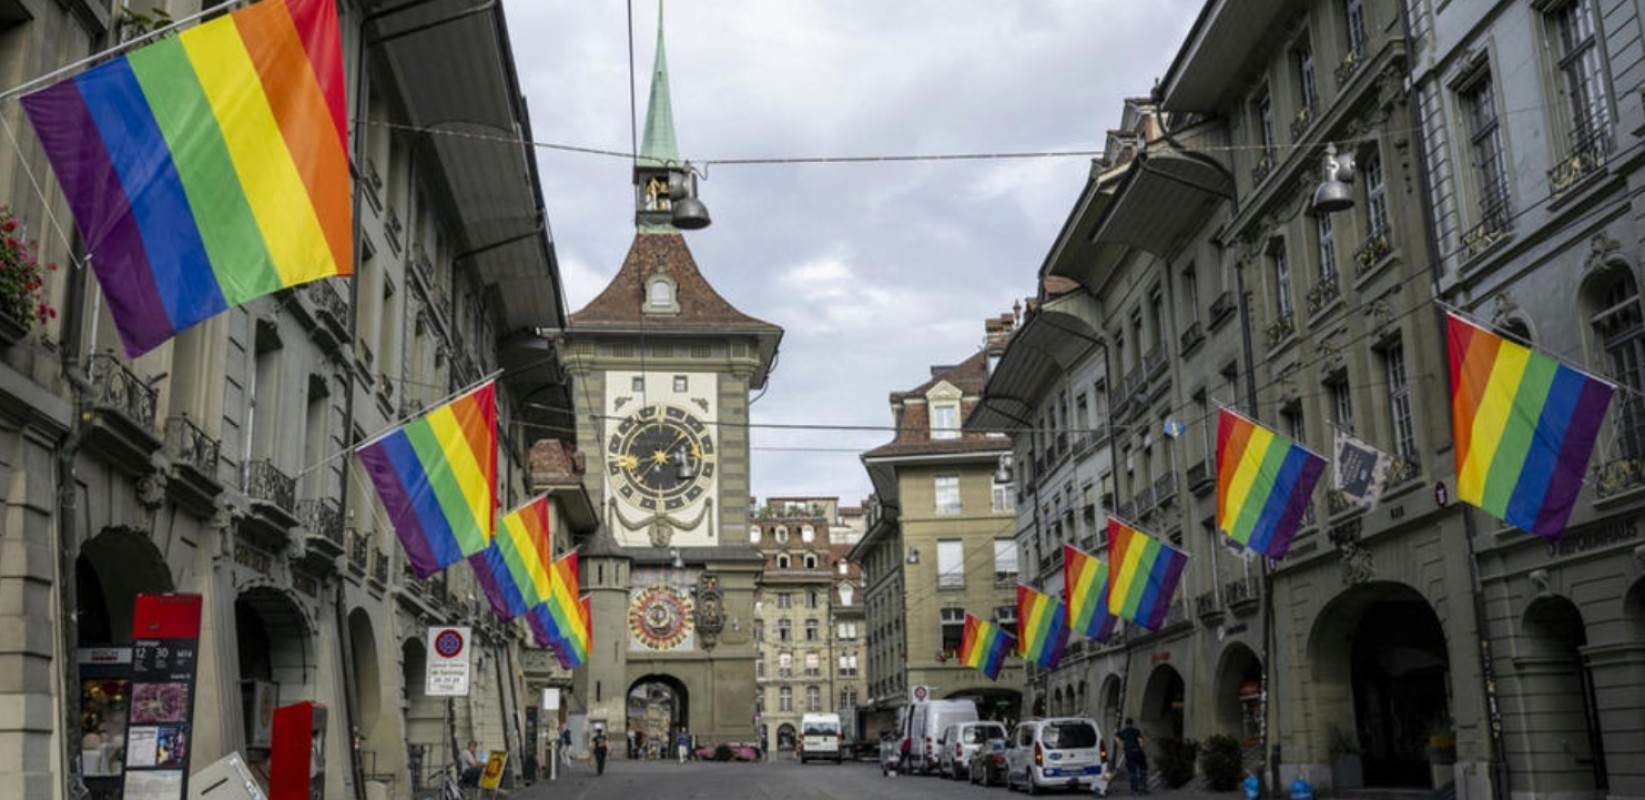 EuroGames 2023: Drapeaux LGBT flottant à Berne, une fierté assumée, mais pas sans polémique